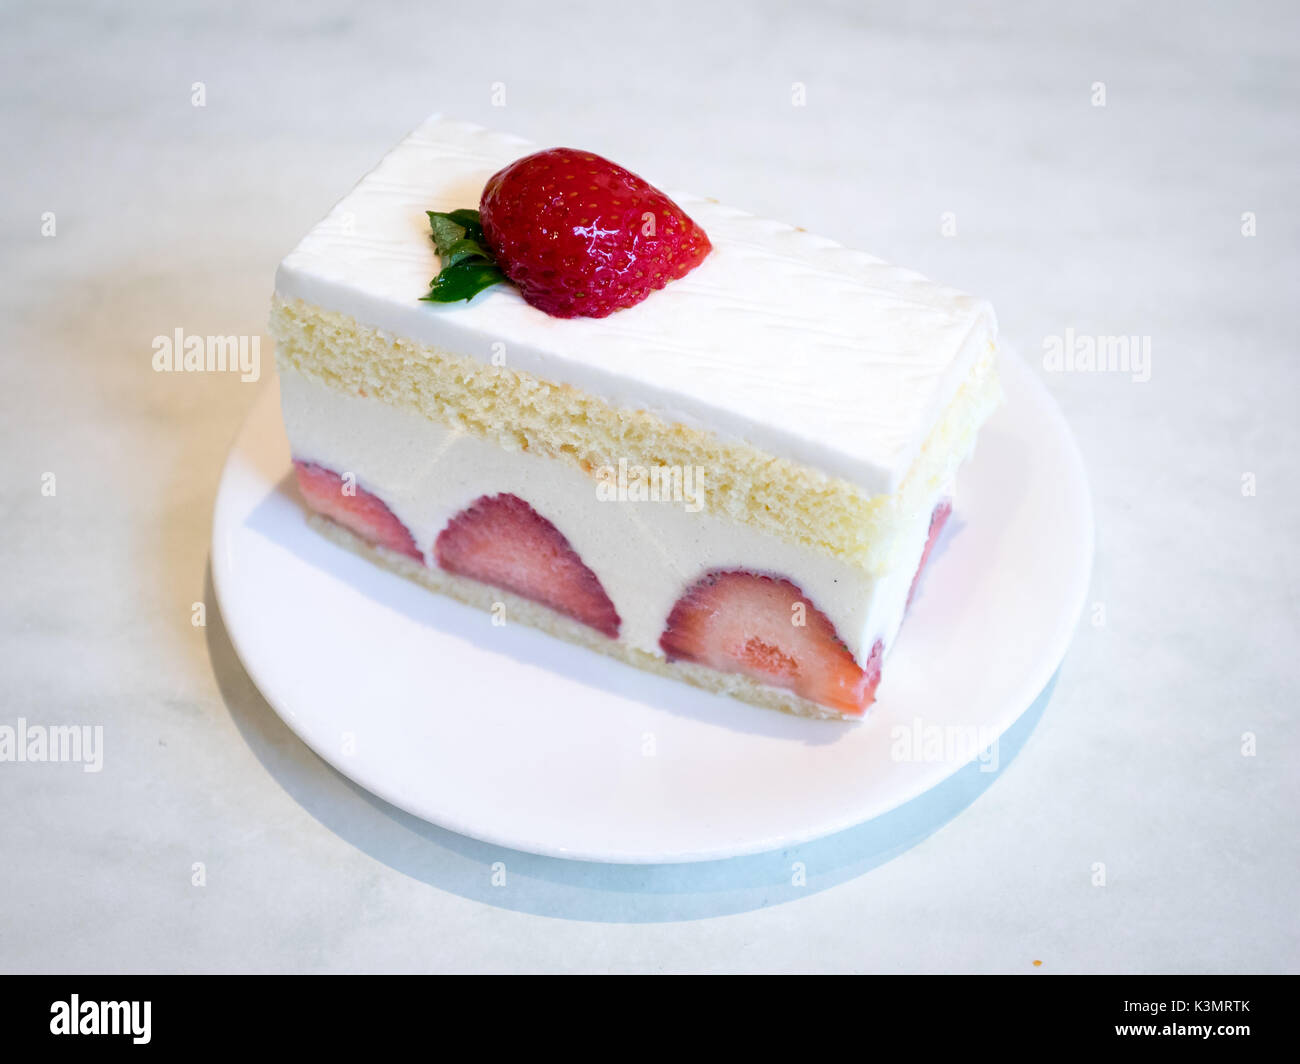 Une tranche de gâteau sablé aux fraises délicieuse, un dessert populaire. Banque D'Images